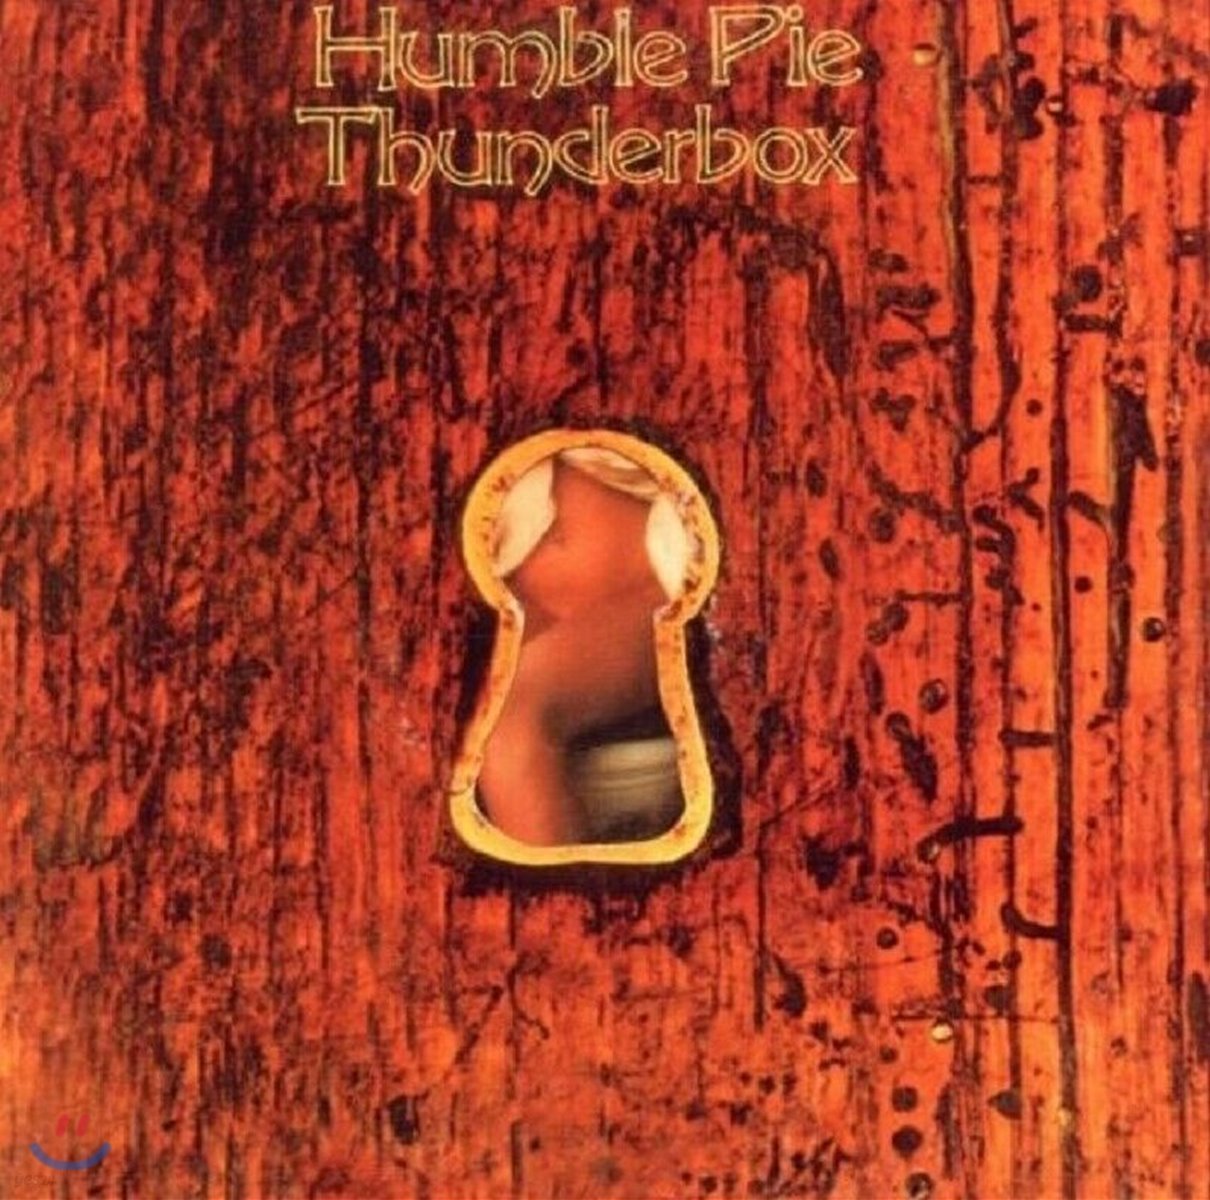 Humble Pie (험블 파이) - Thunderbox